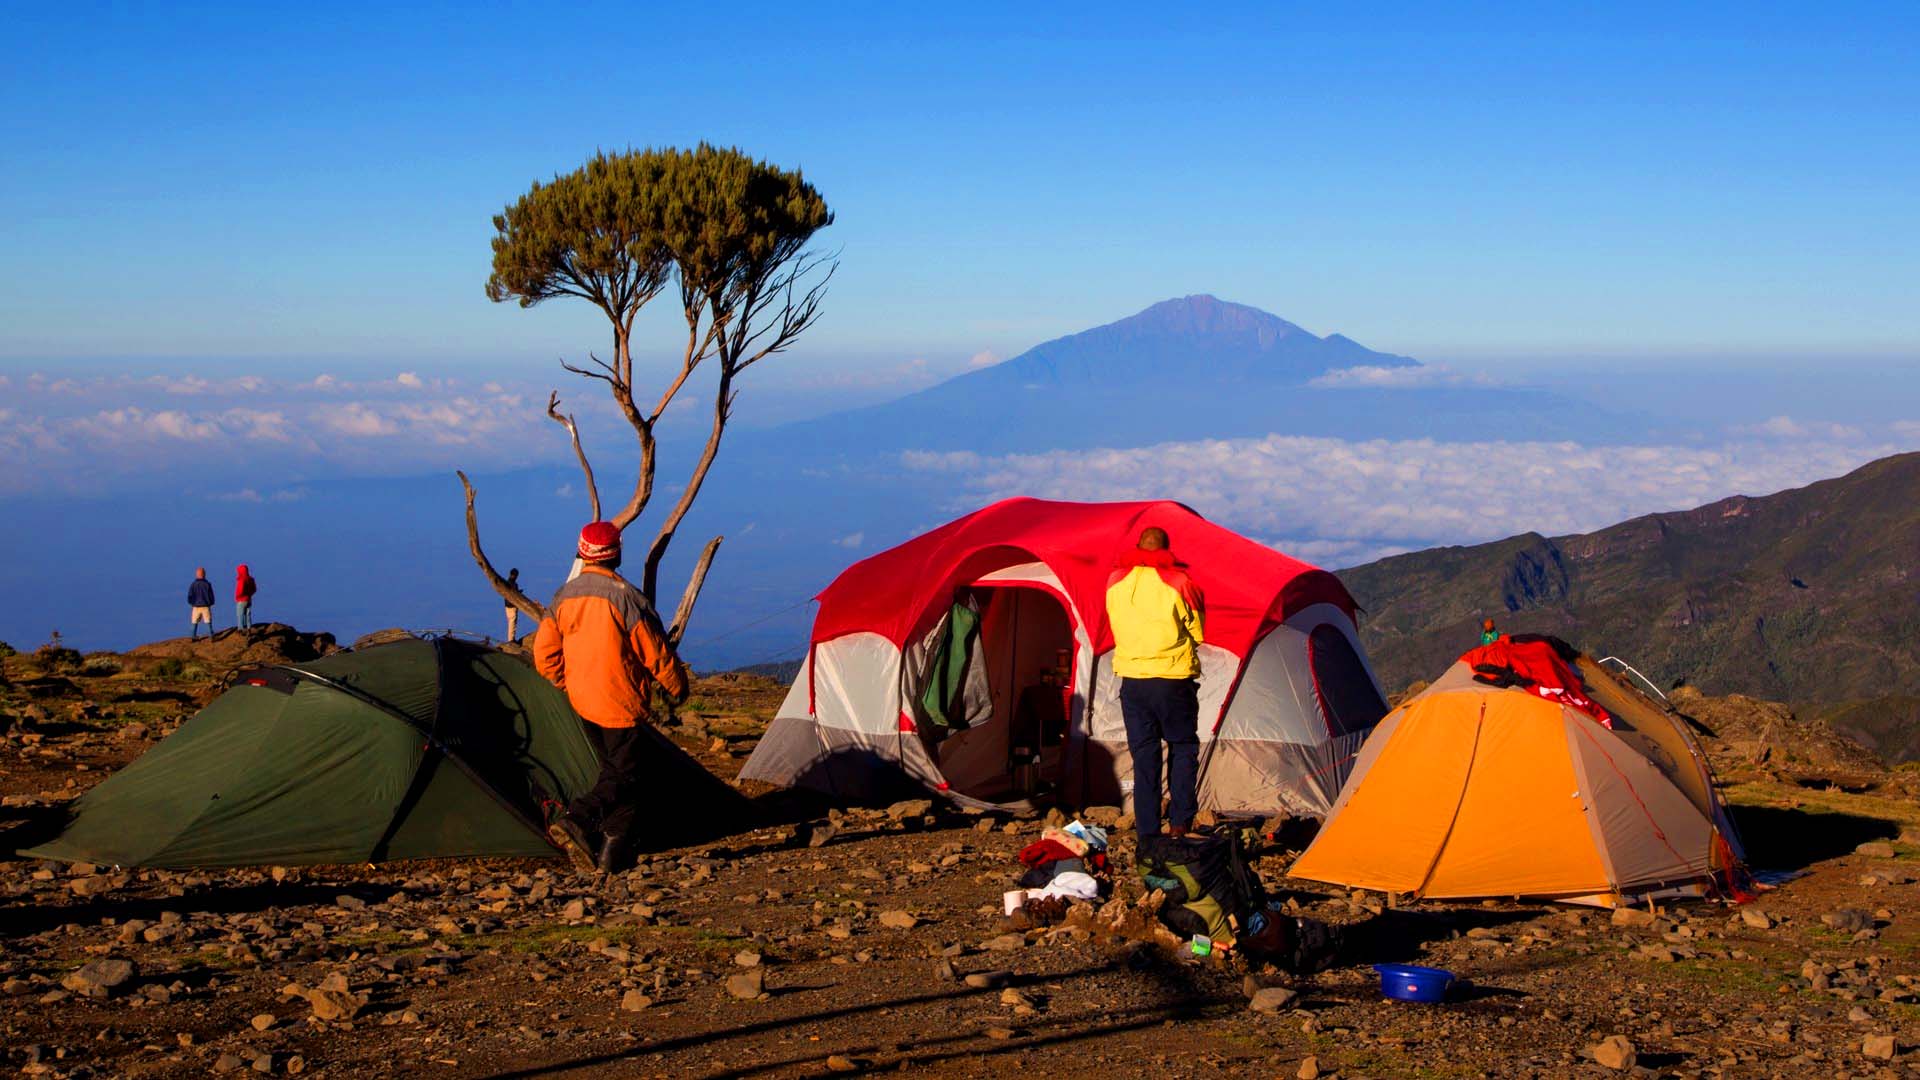 Daily Kilimanjaro routine